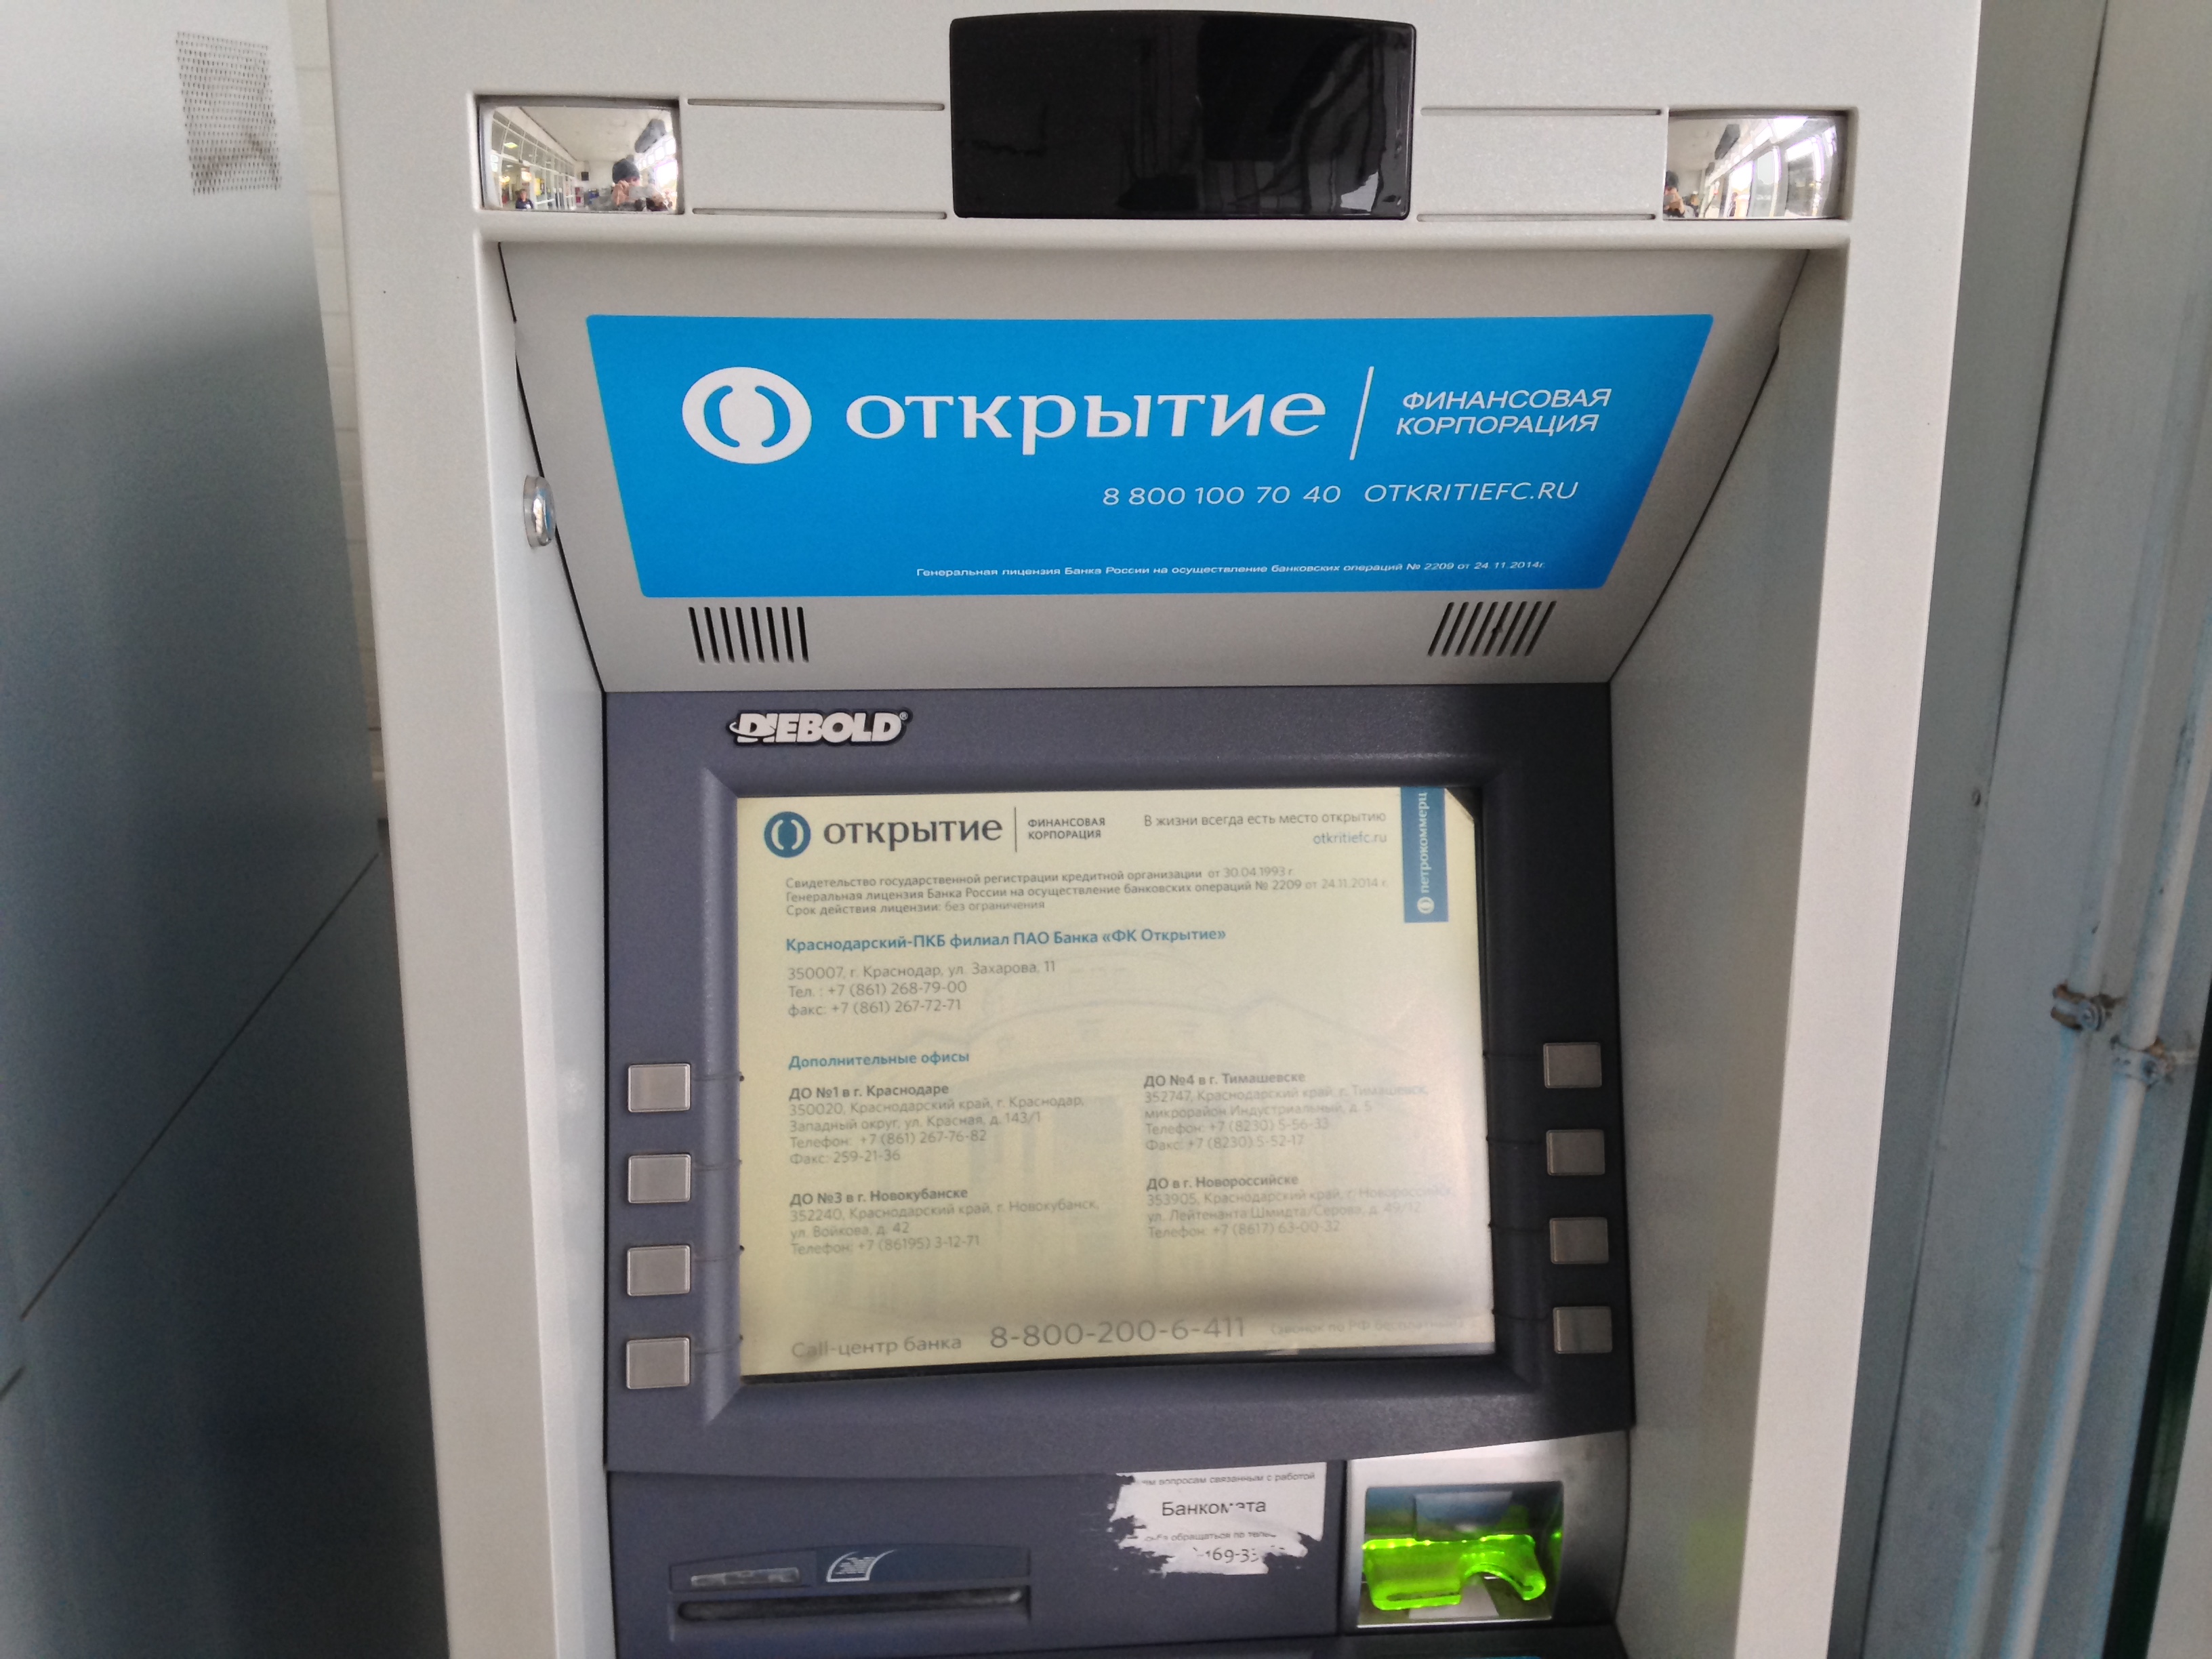 Бинбанк и банк «Открытие» объединили сети банкоматов на снятие наличных